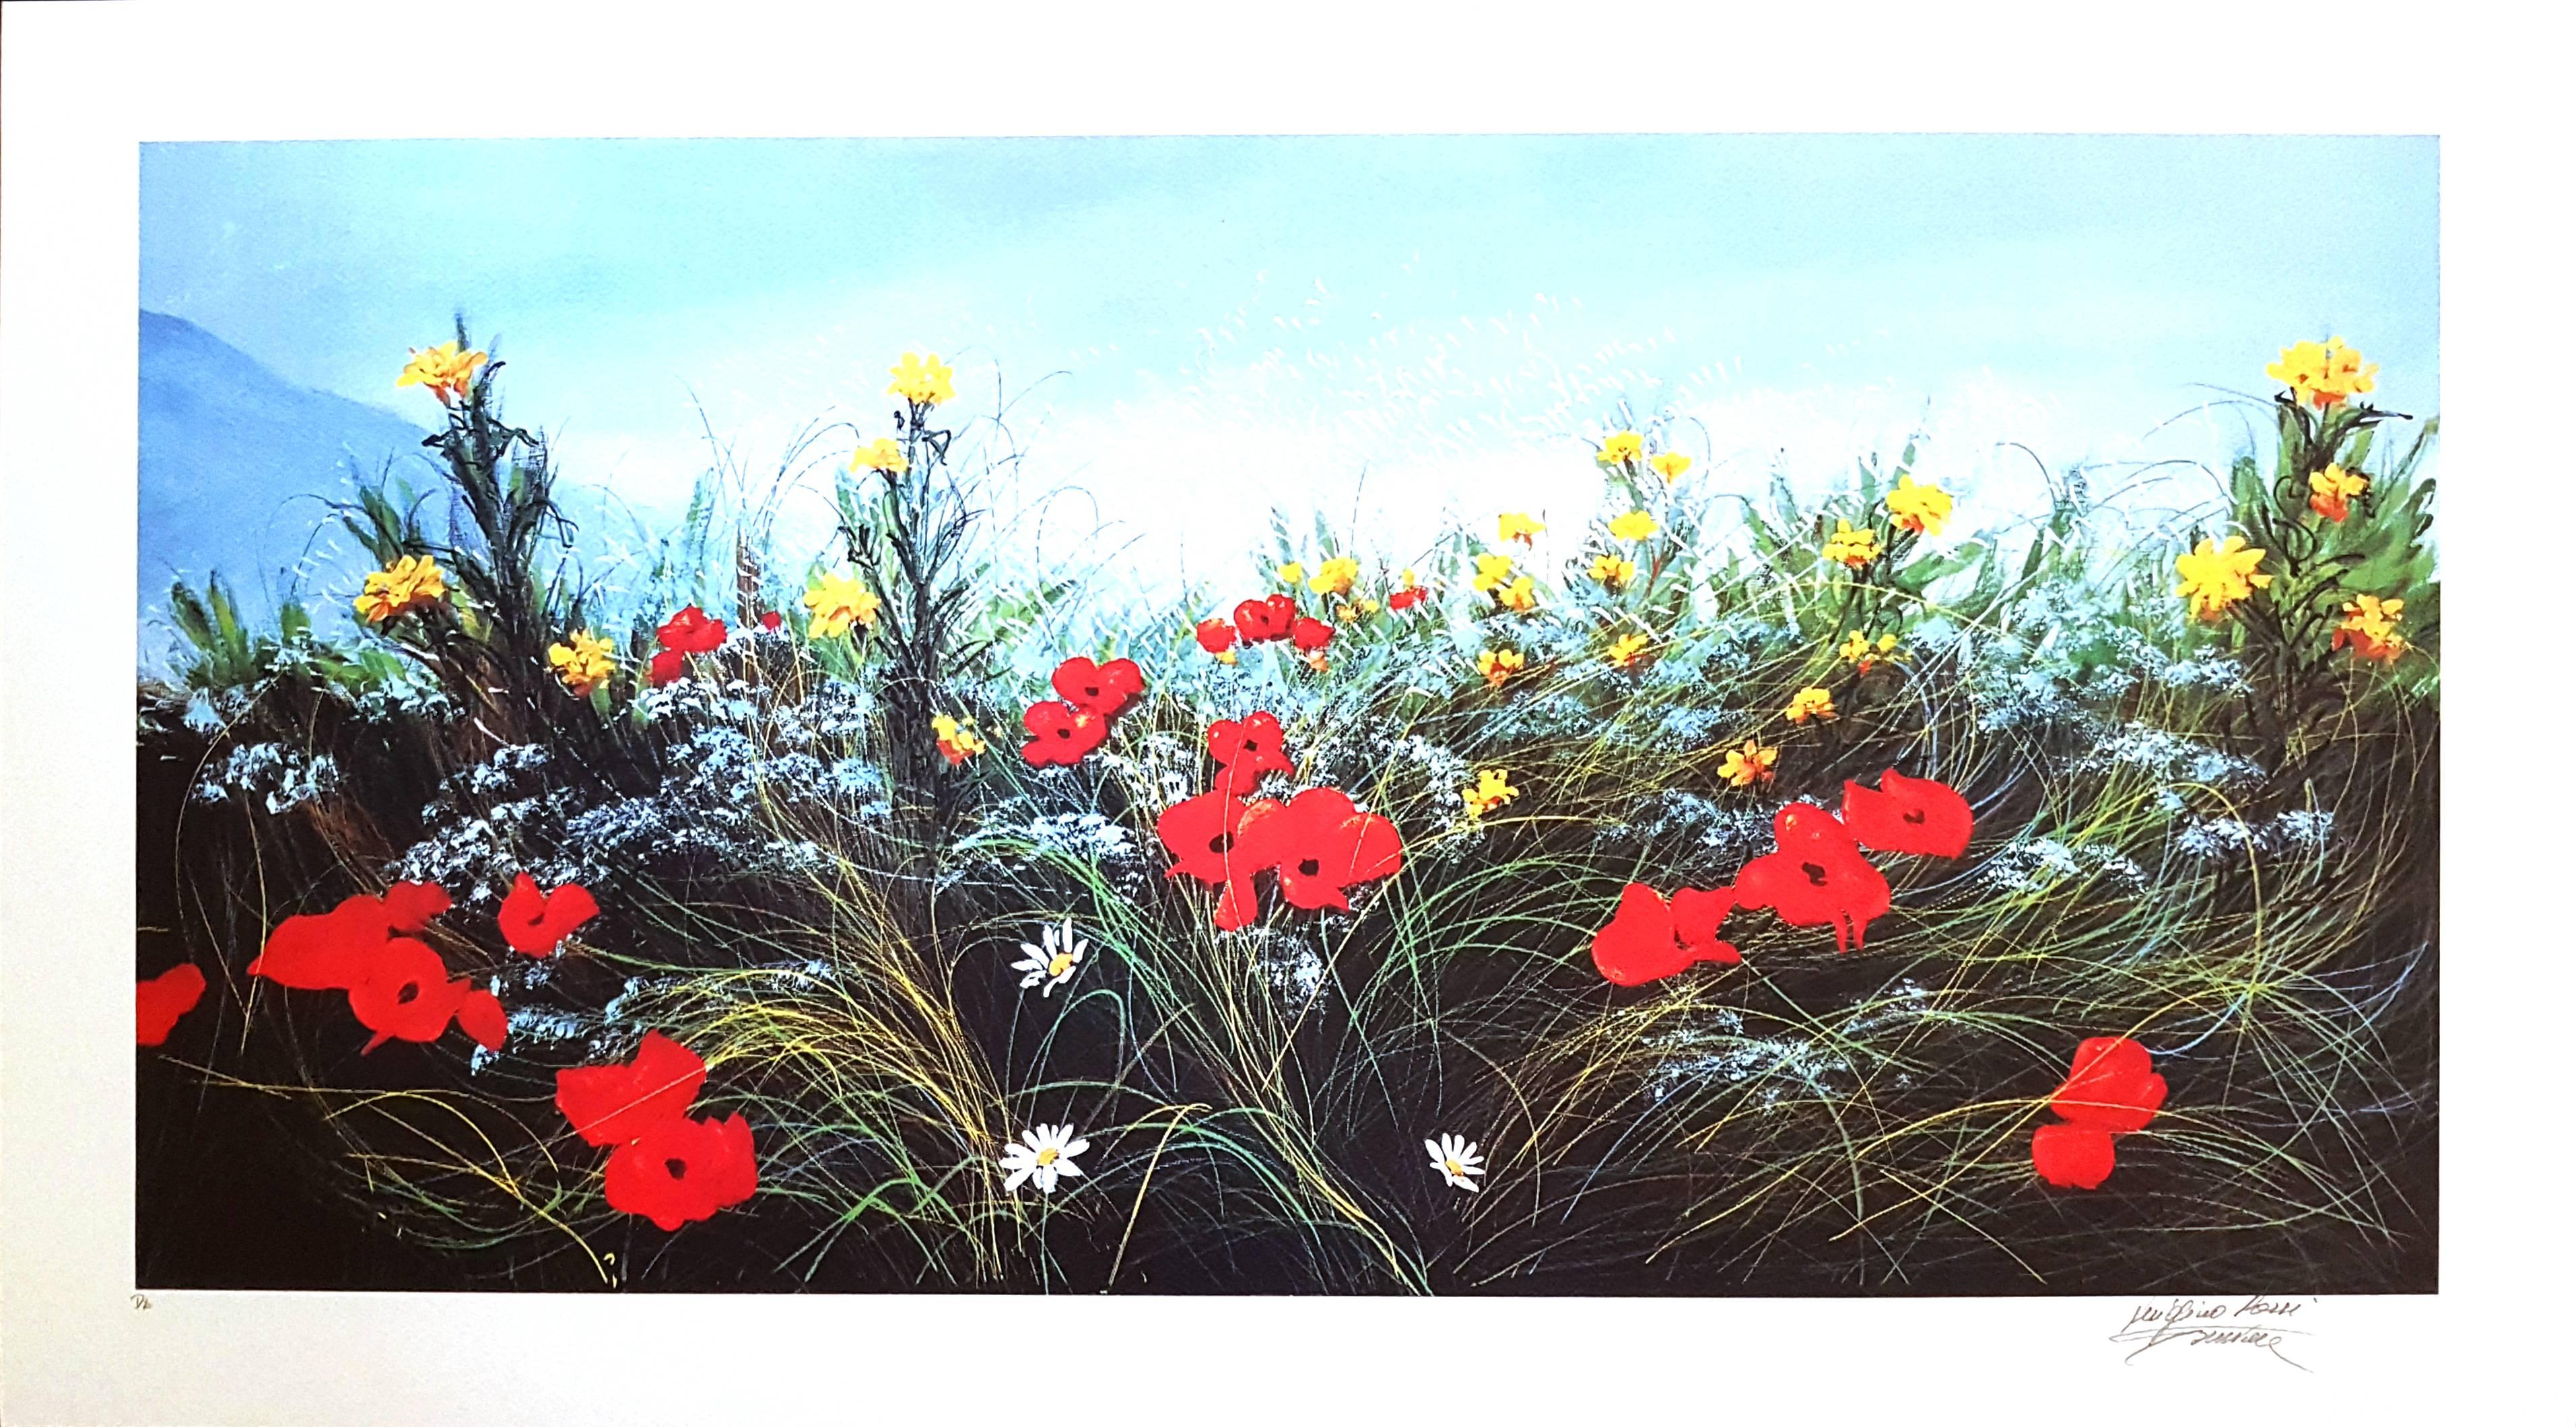 Luigino Rossi Garzione Figurative Print - Wildflowers - Original Screen Print - 1980s